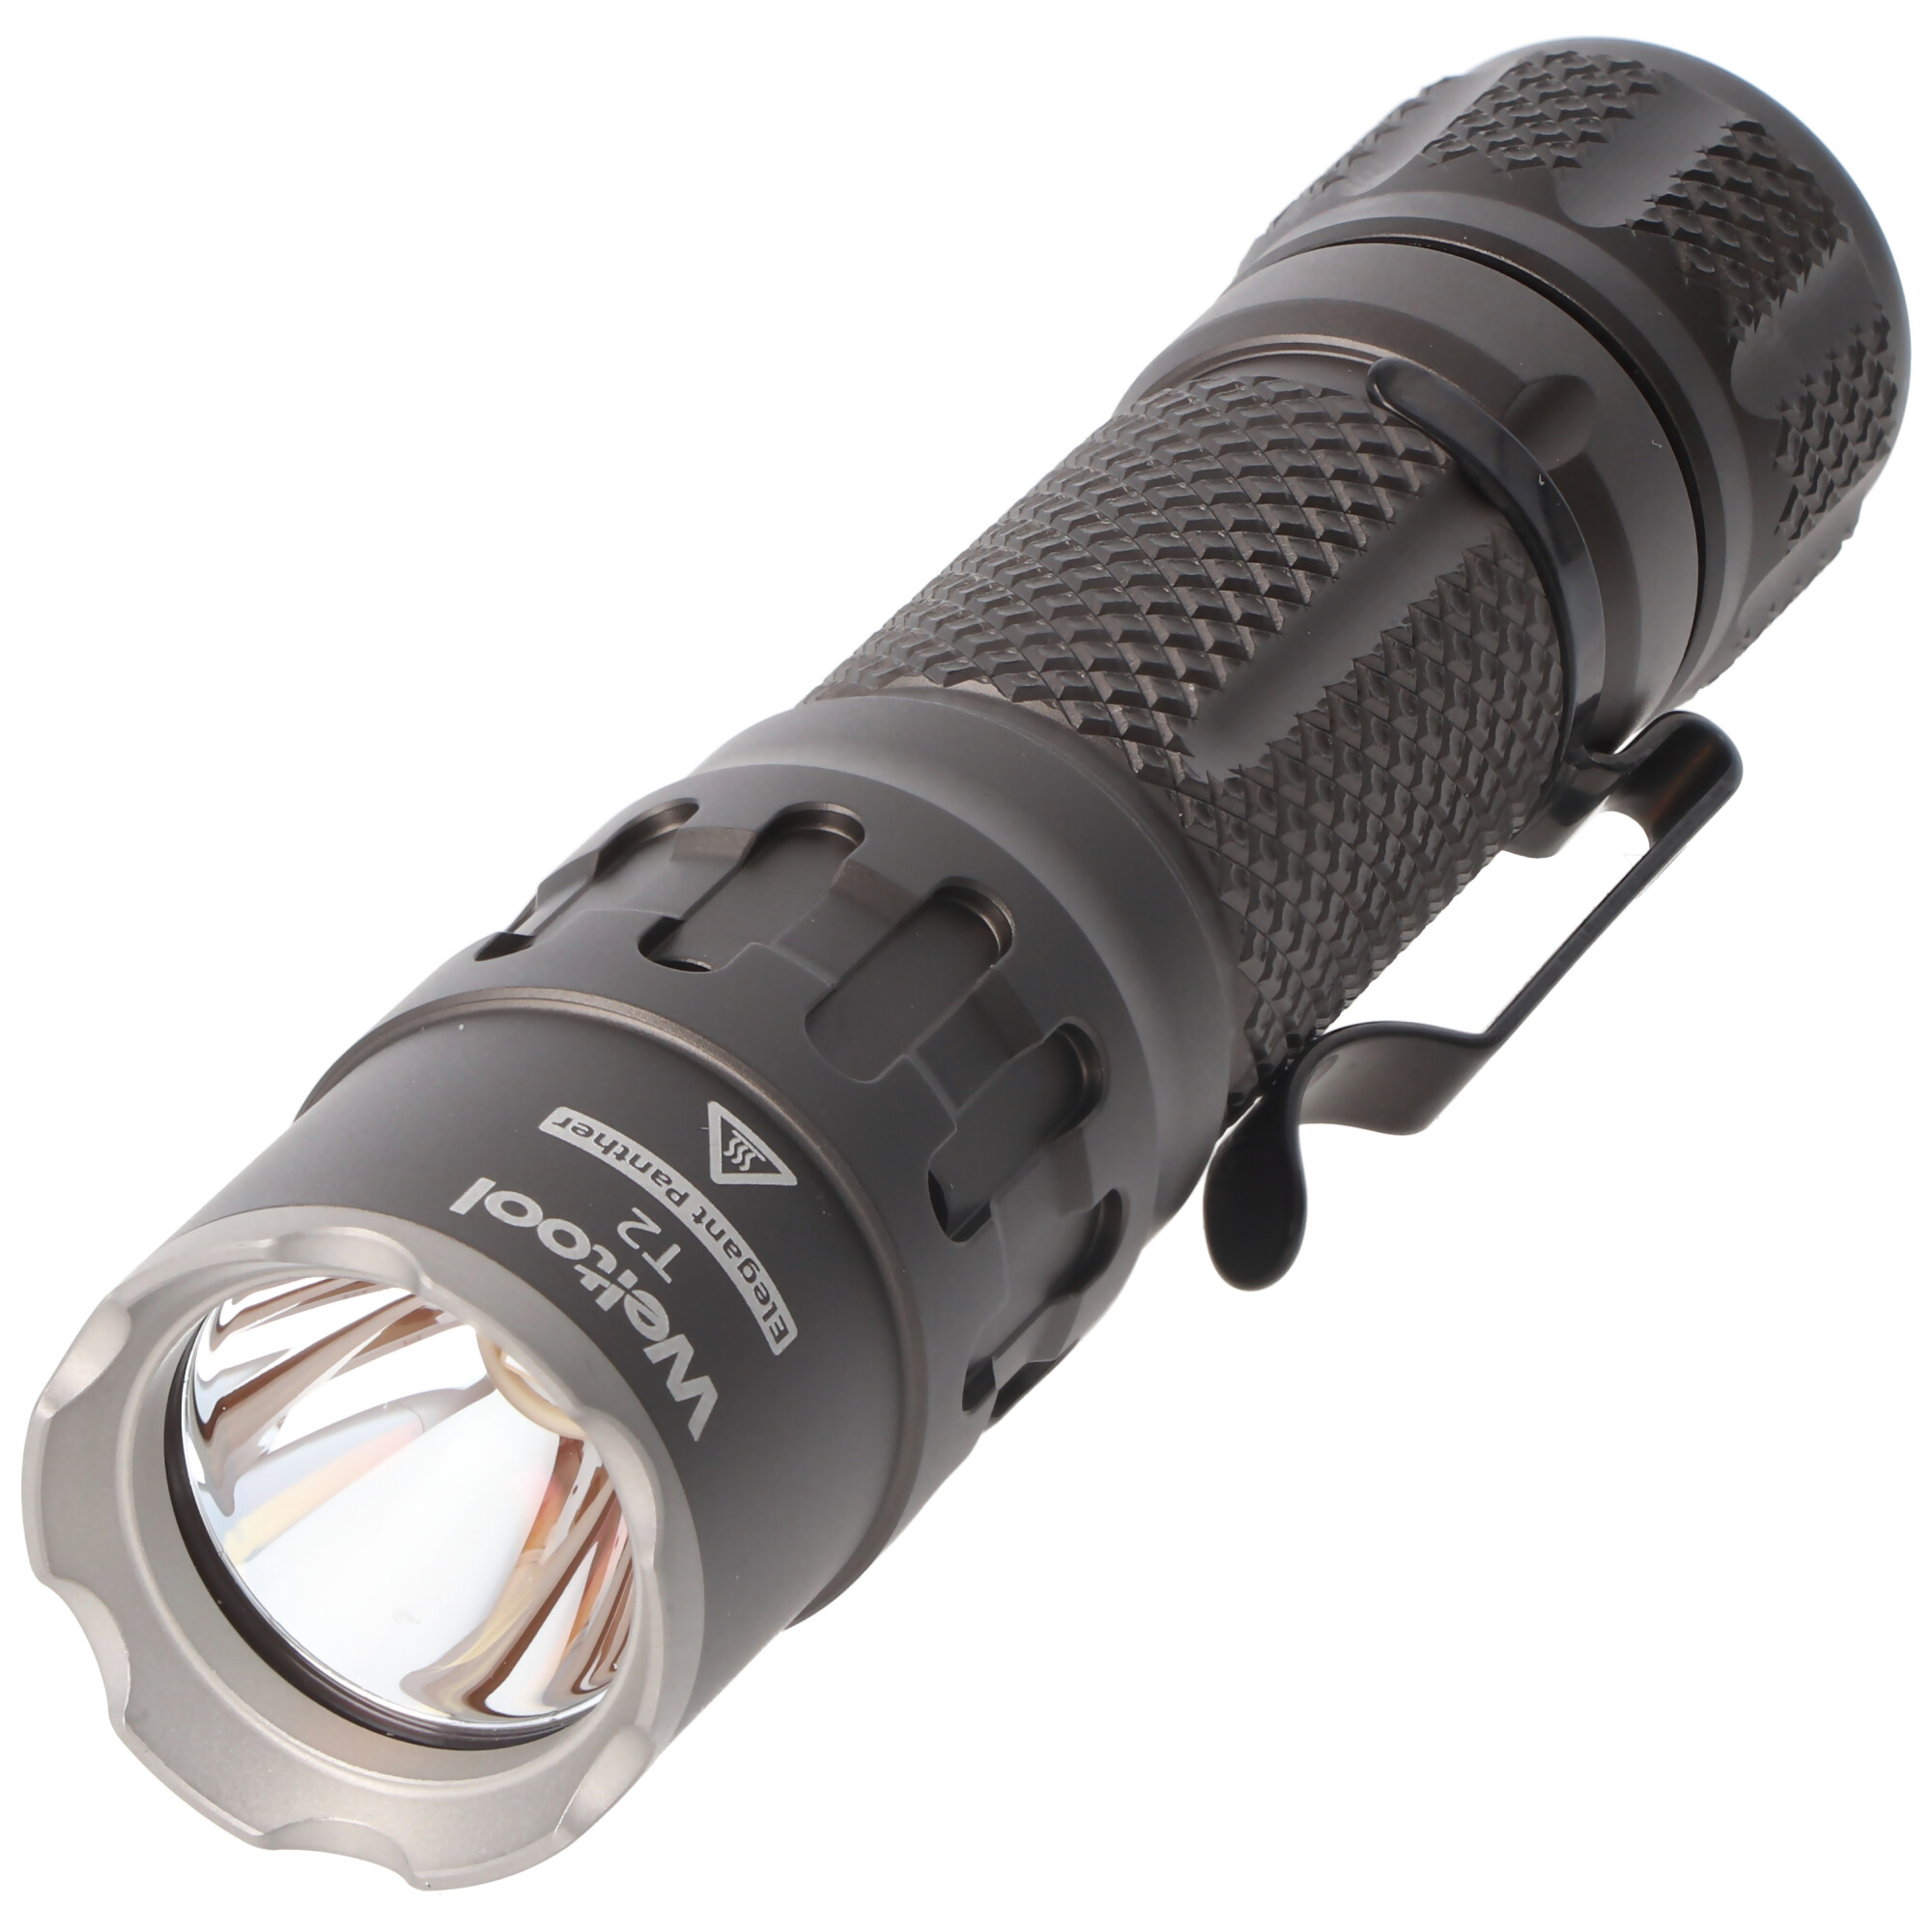 Weltool T2 leistungsstarke und kompakte LED-Taschenlampe mit 1.730 Lumen, Farbe grau, Kühlstruktur mit Durchgangsbohrungen am Lampenkopf, inkl. Akku und Ladegerät